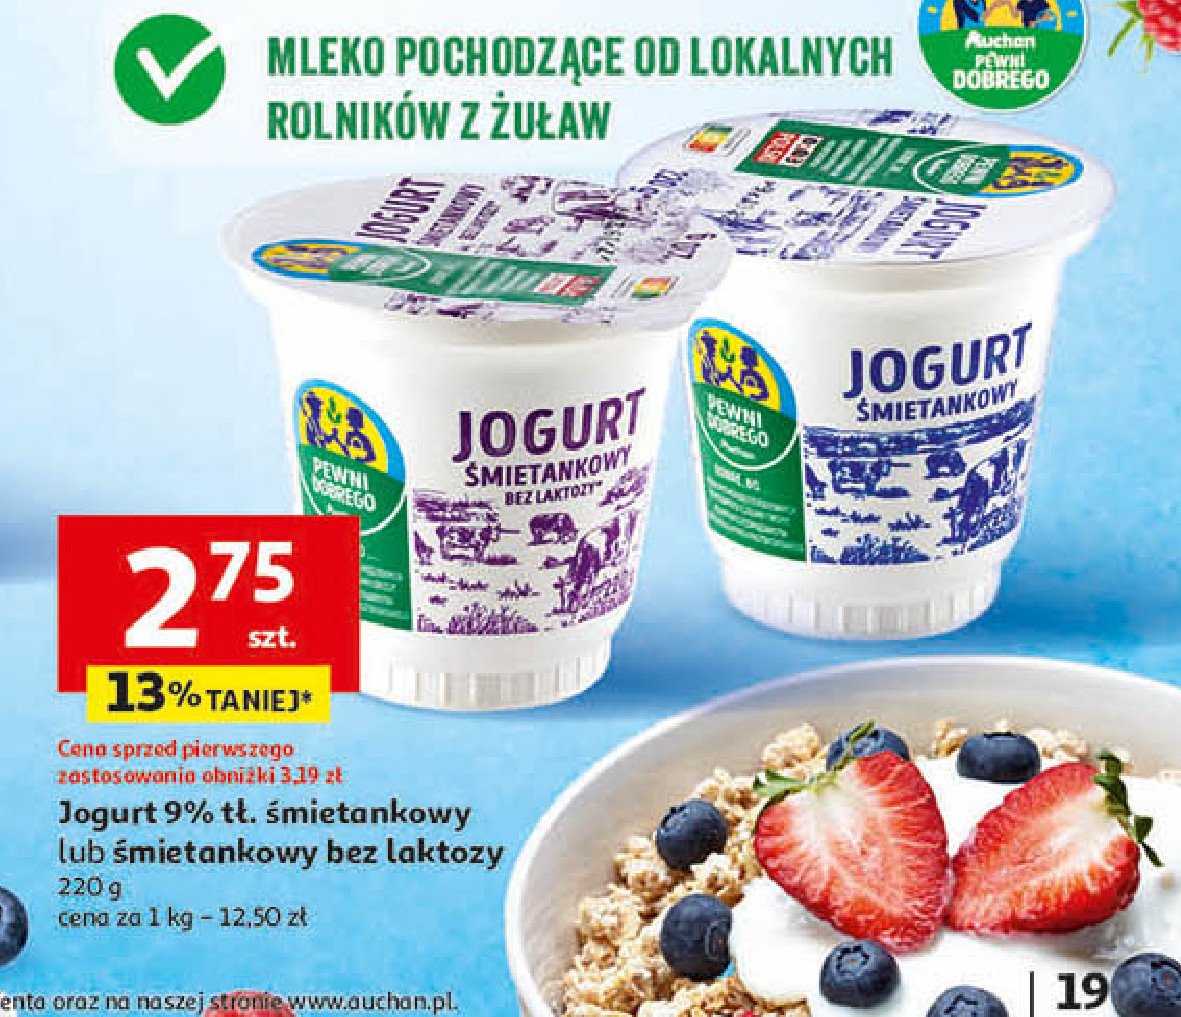 Jogurt śmietankowy Auchan pewni dobrego promocja